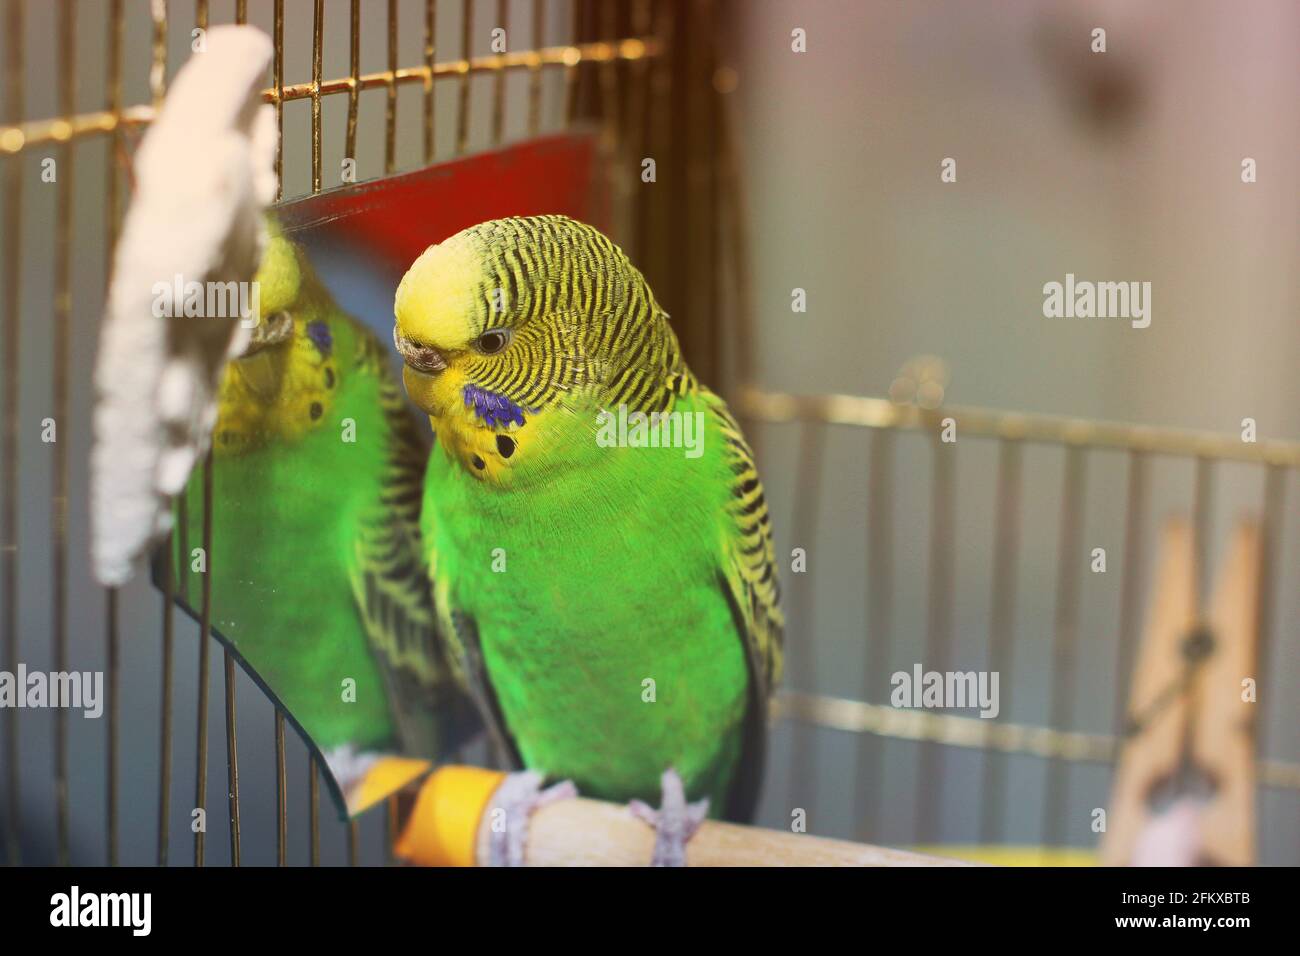 Wavy parrot near the mirror Stock Photo